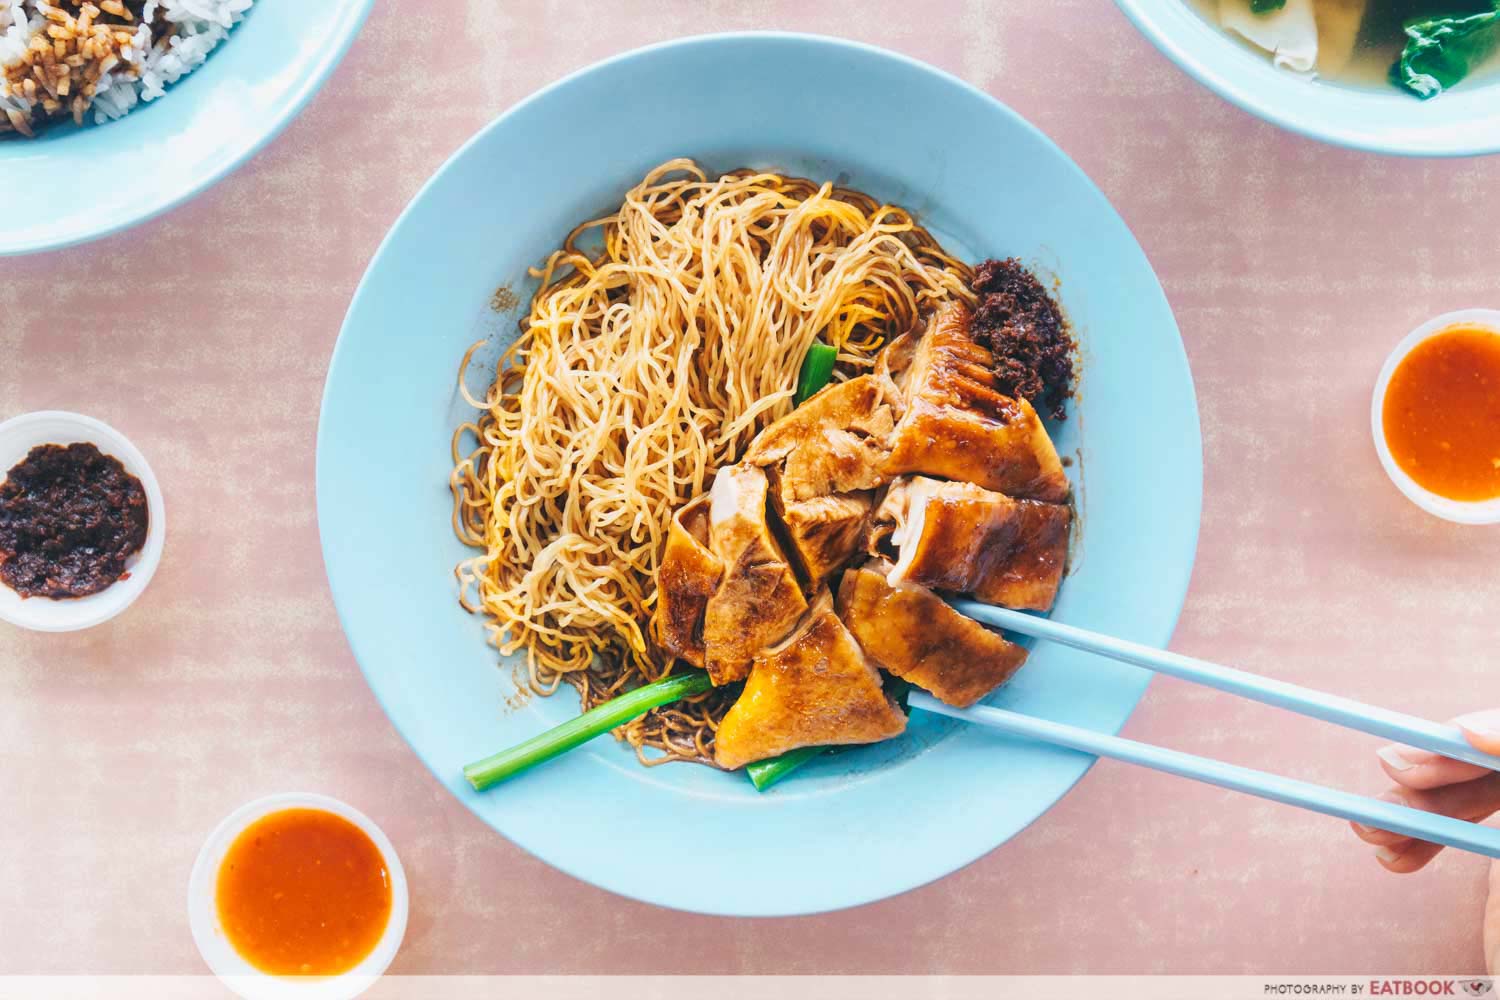 Xiang Jiang - Chicken noodles